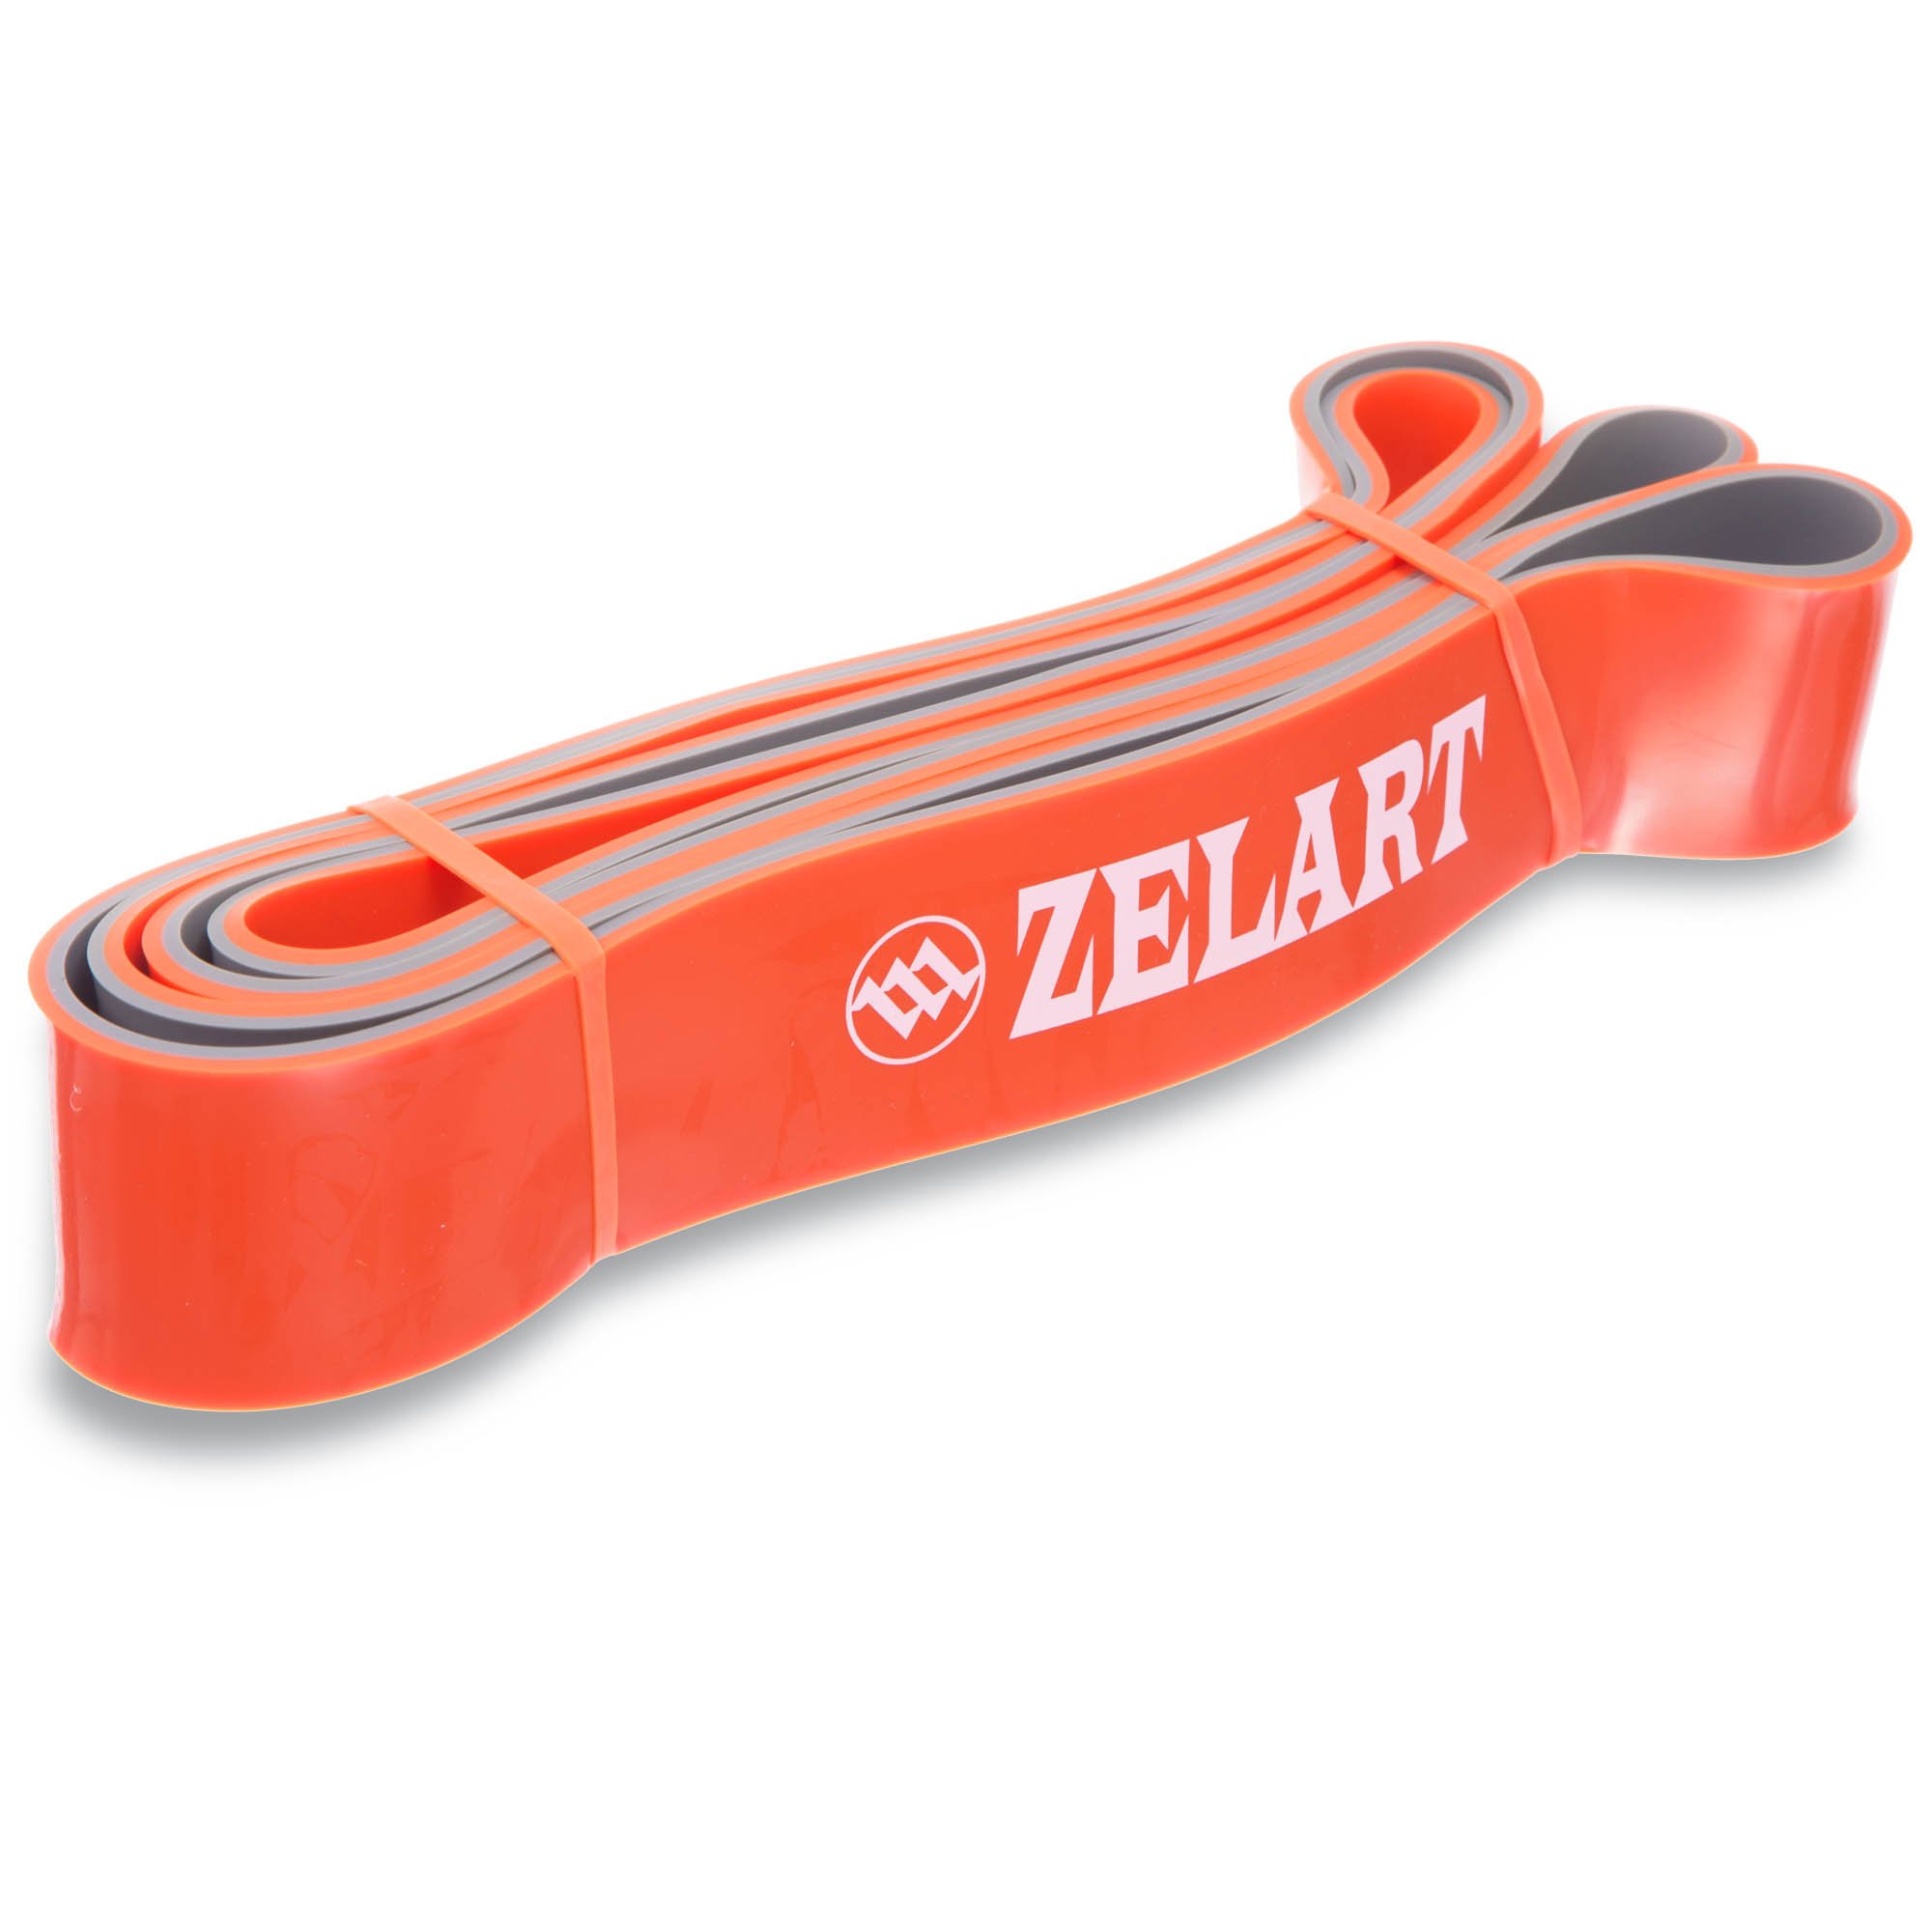 Резиновая петля для подтягивания. Zelart резинка. Резину для подтягивания Zelart. Эспандер лента кольцо 2080x4.5x10 мм 2-15 кг (двухцветн). Резиновые петли Power Band.